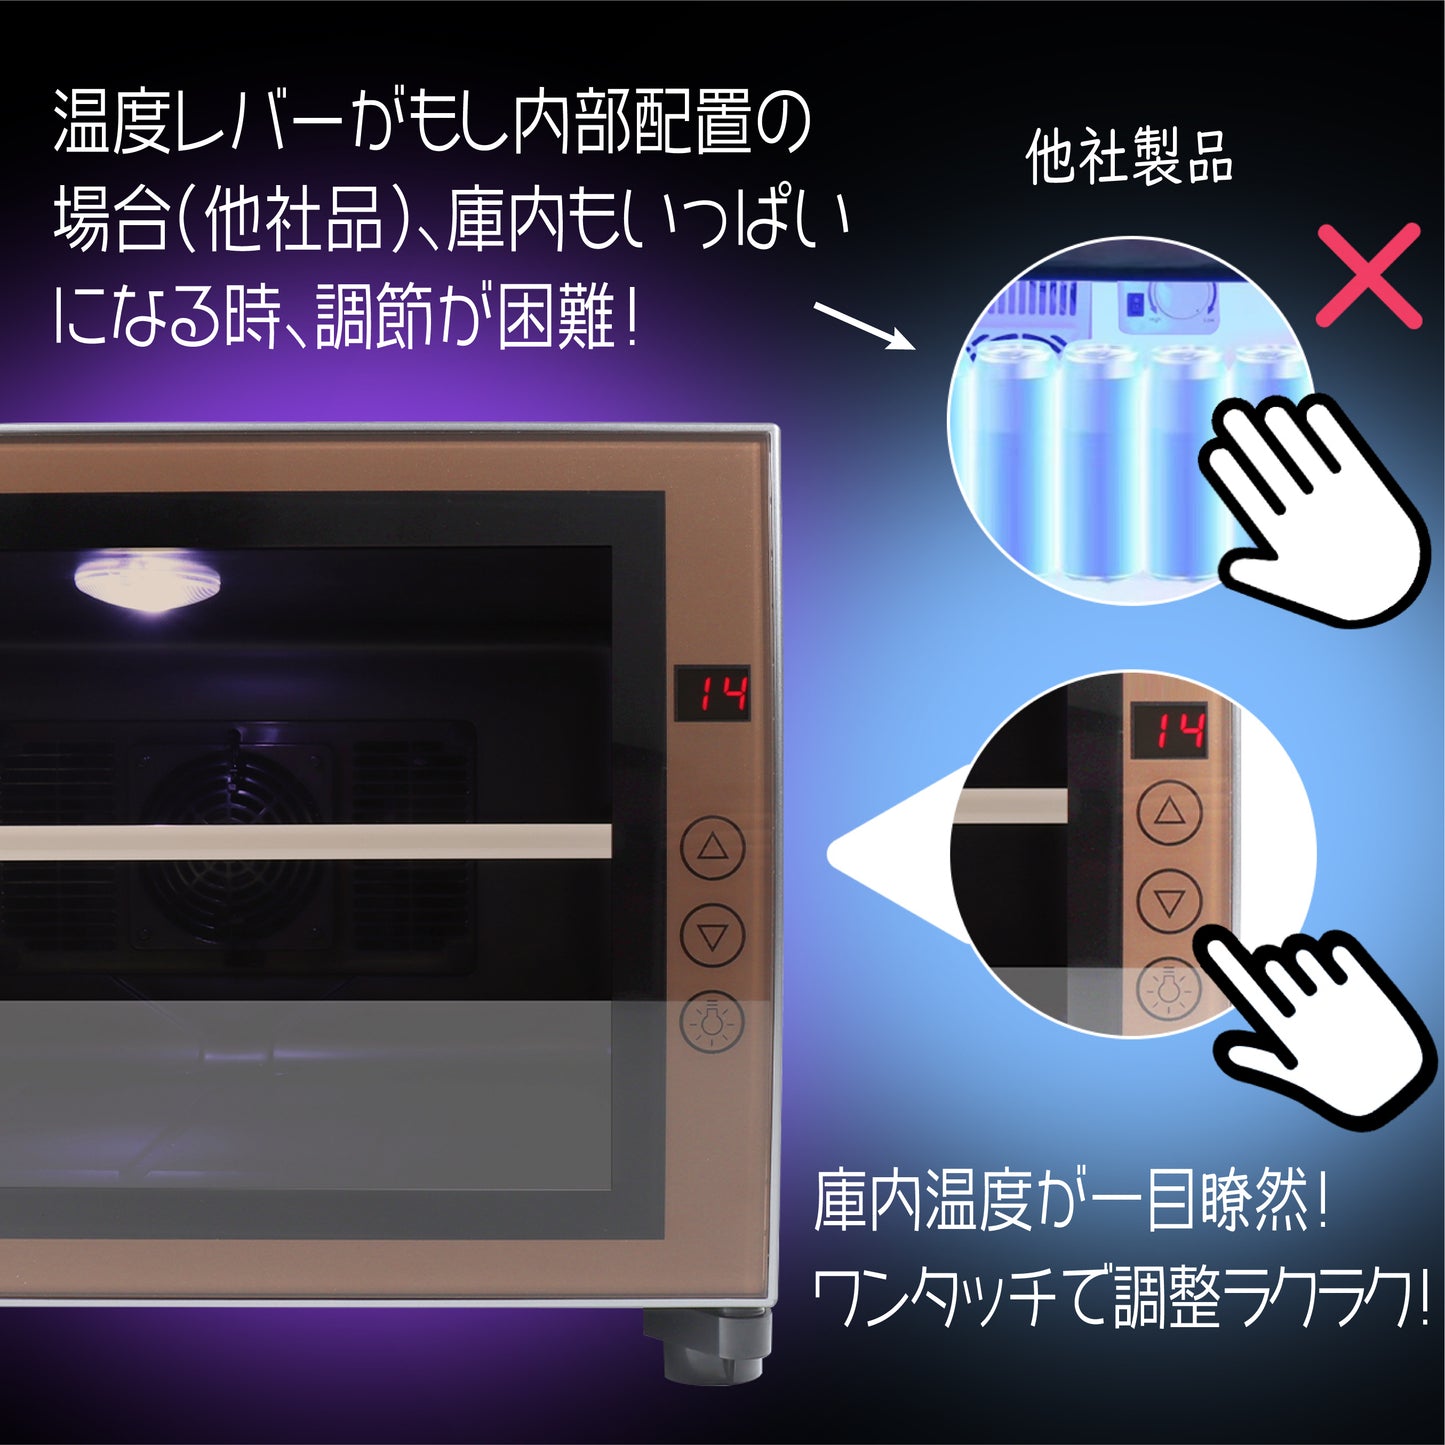 【電子レンジではなく、これは冷蔵庫です】Shelddi ミニ冷蔵庫 23L おしゃれ 小型 静音 一人暮らし コンパクト 静音 SHRM-023-S